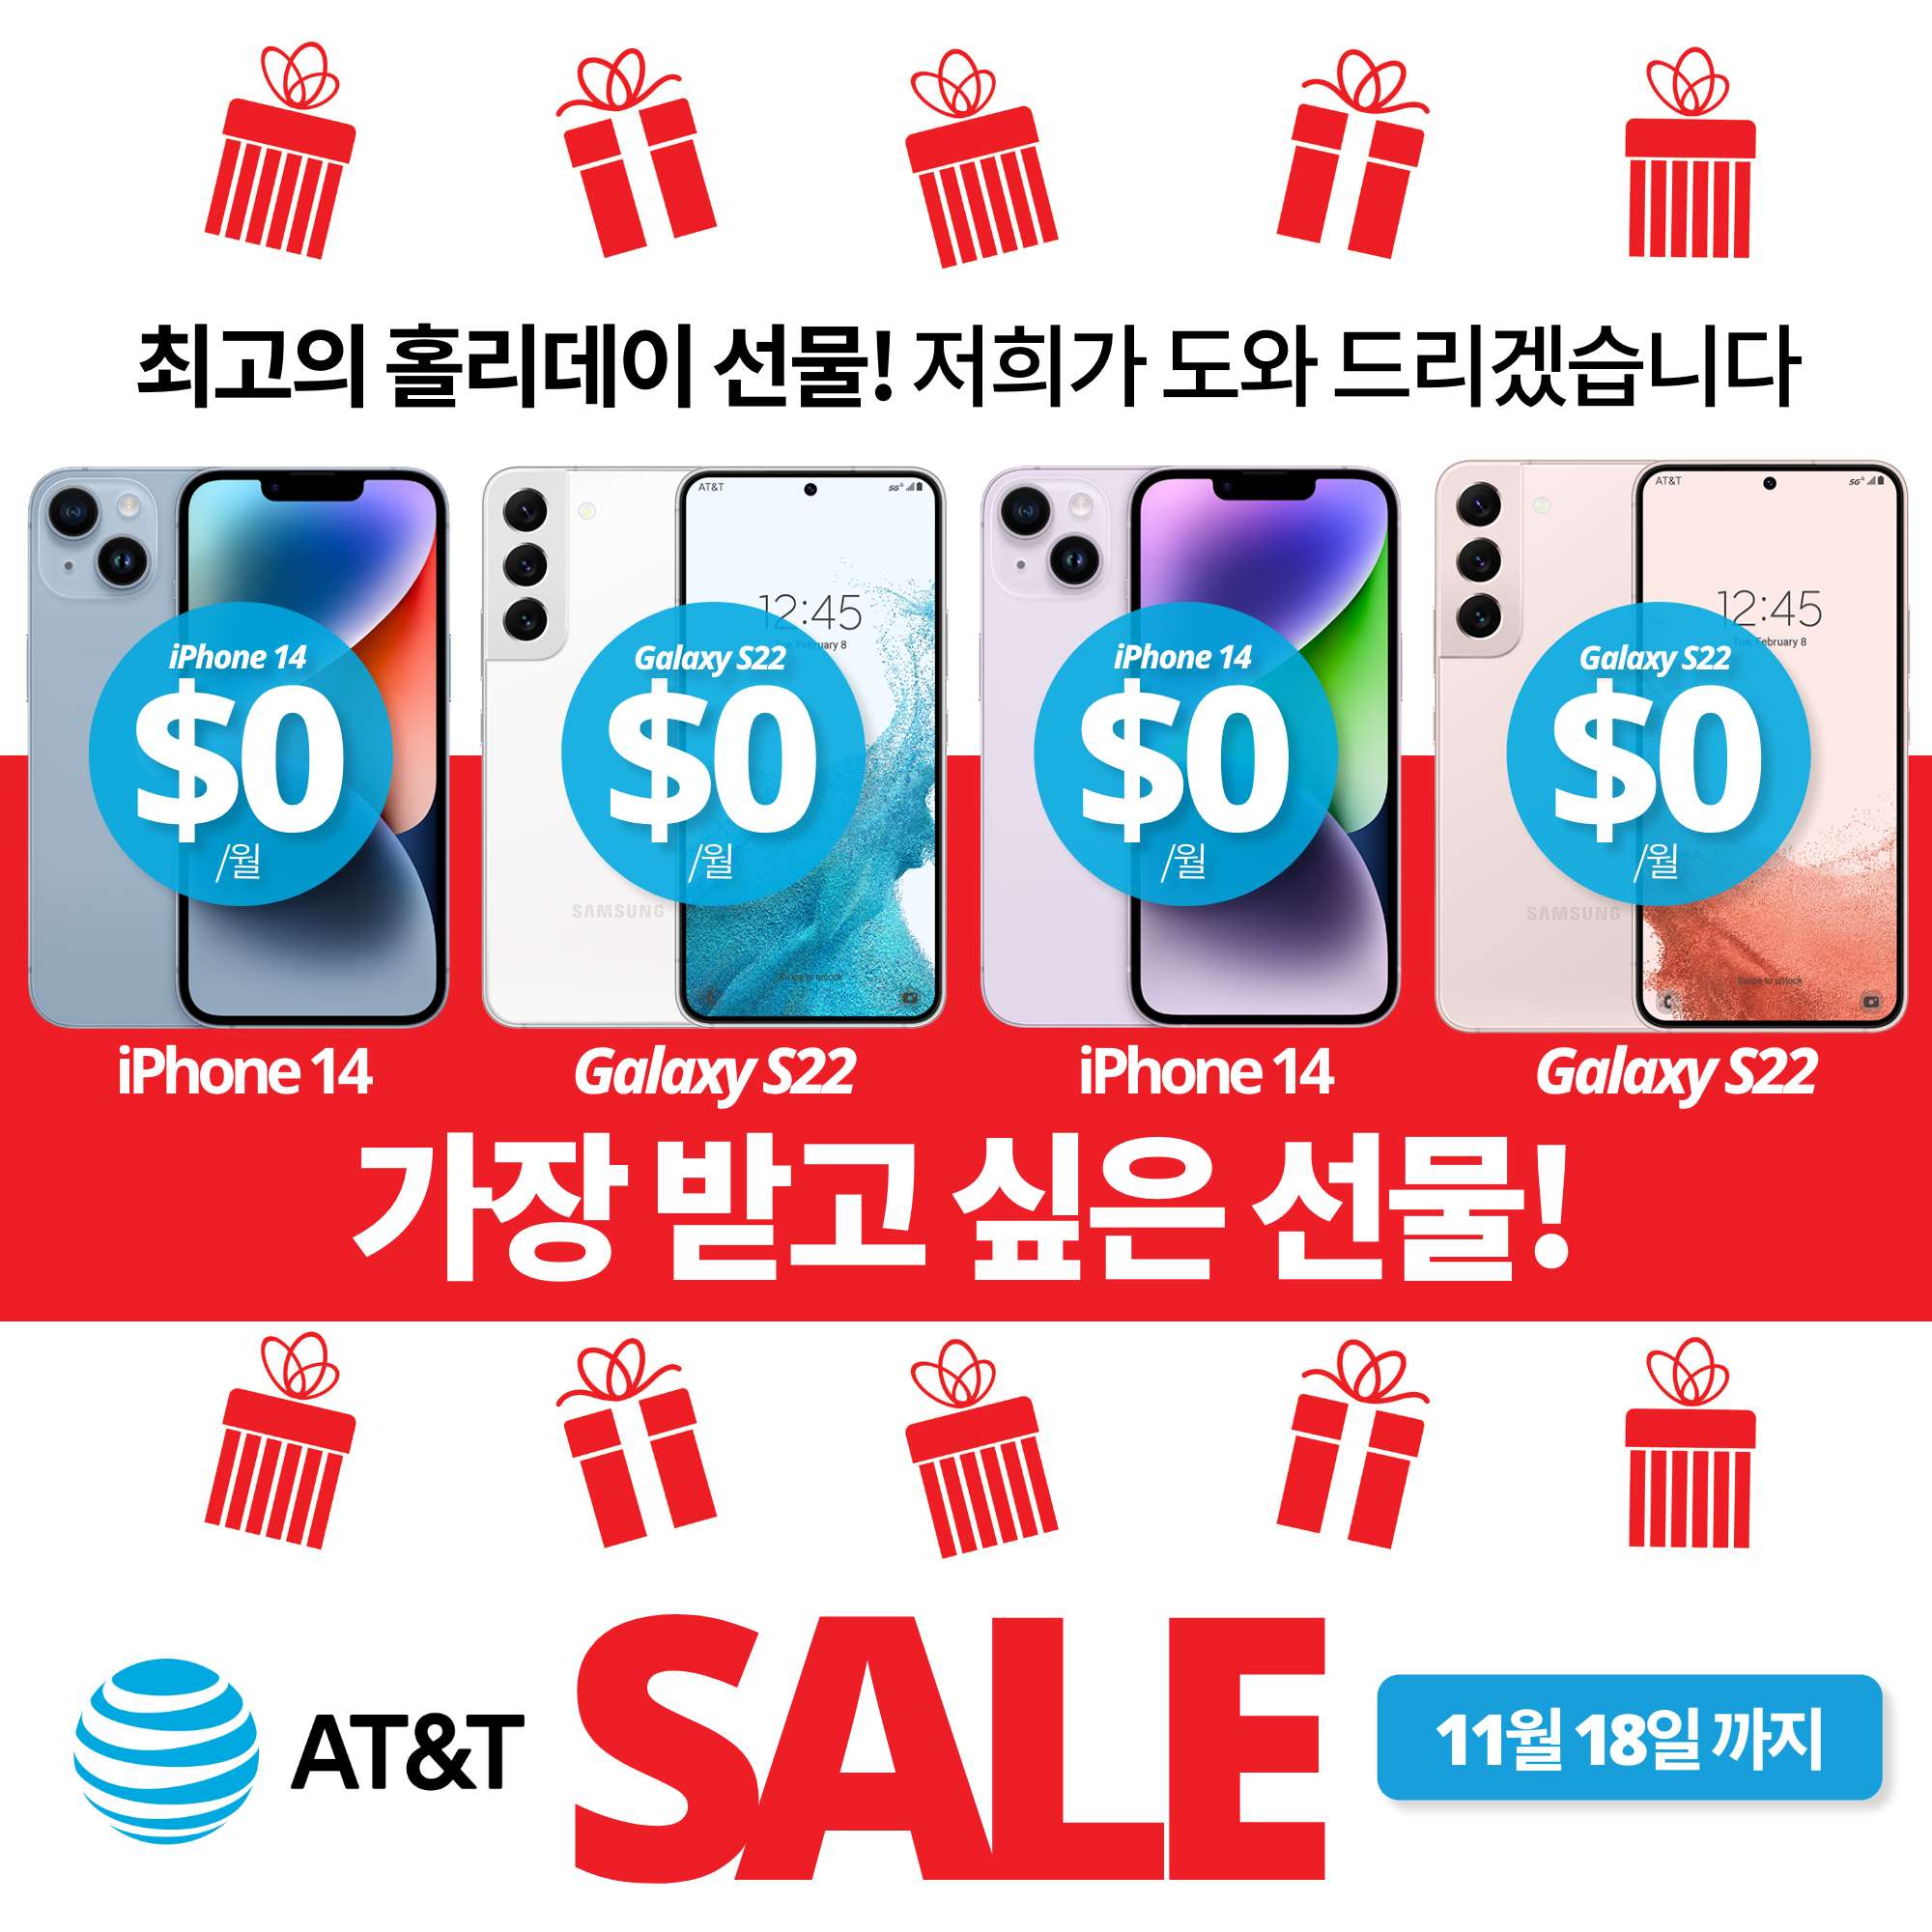 At&T 한국어 – 미국내 유일한 한인공인딜러 – 아이폰 및 갤럭시 핫딜, 무제한플랜, 홈인터넷